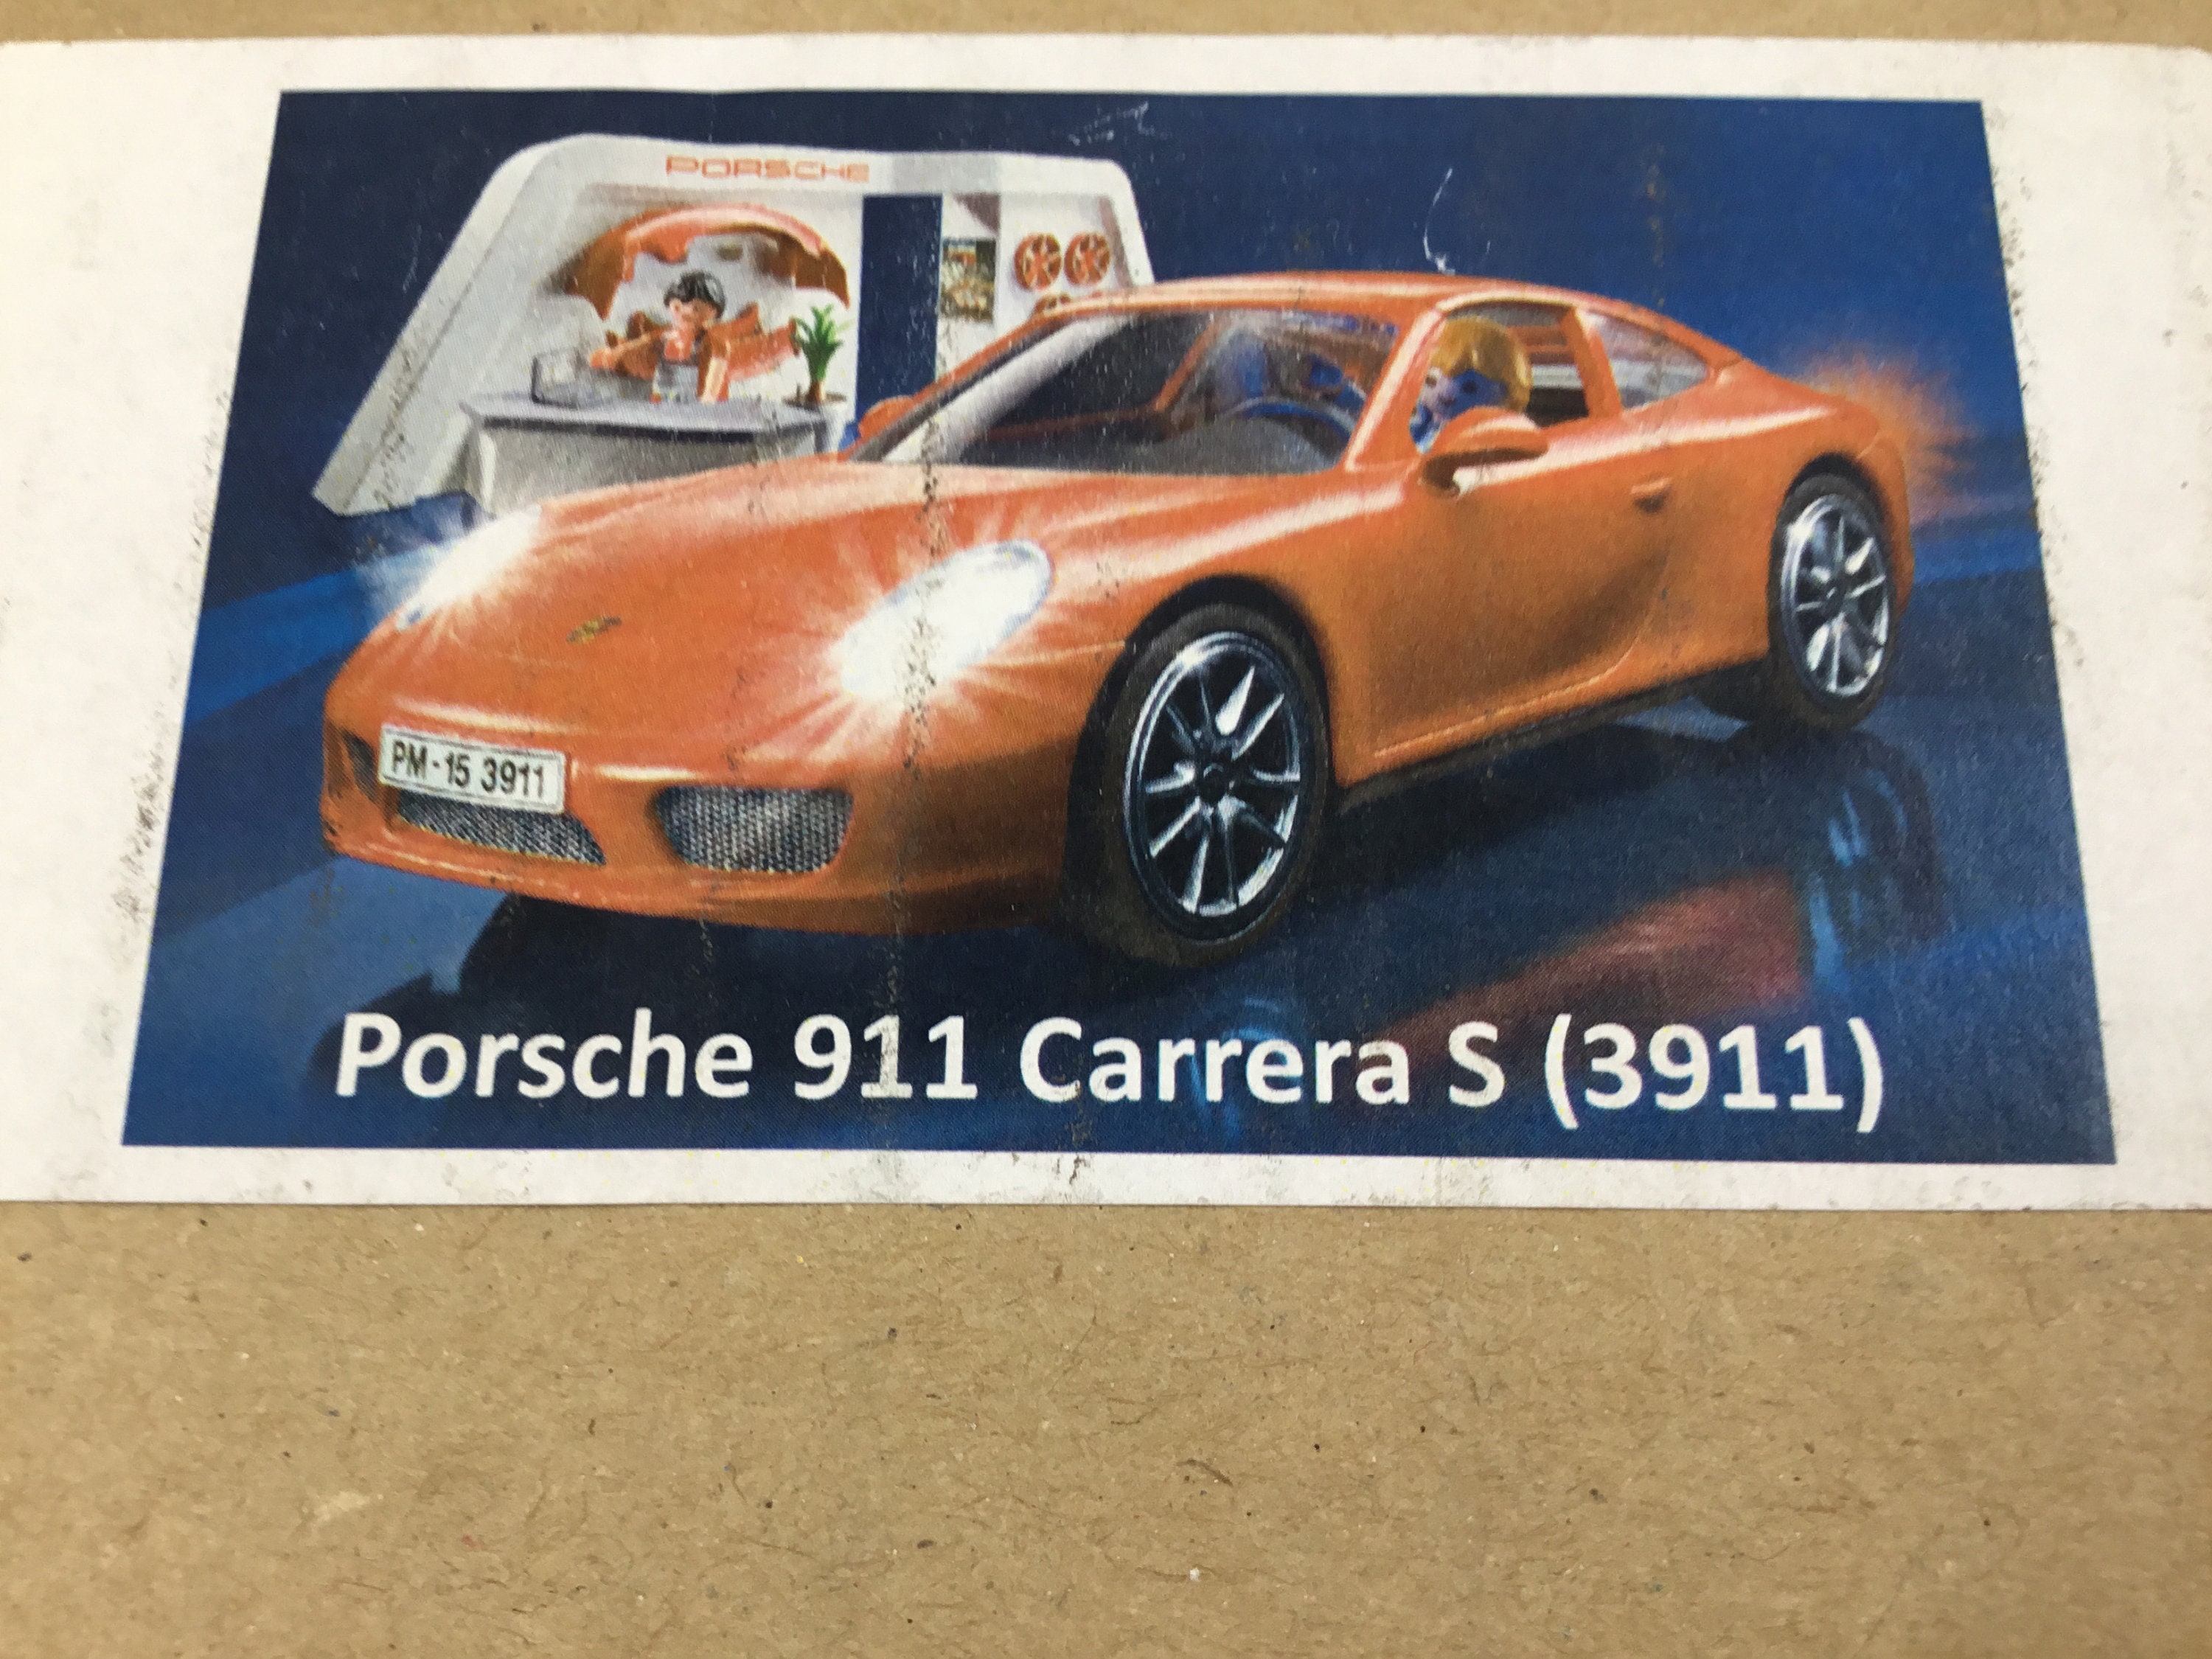 NEW IN BOX Rare Store Display Playmobil Porsche 911 Carrera S